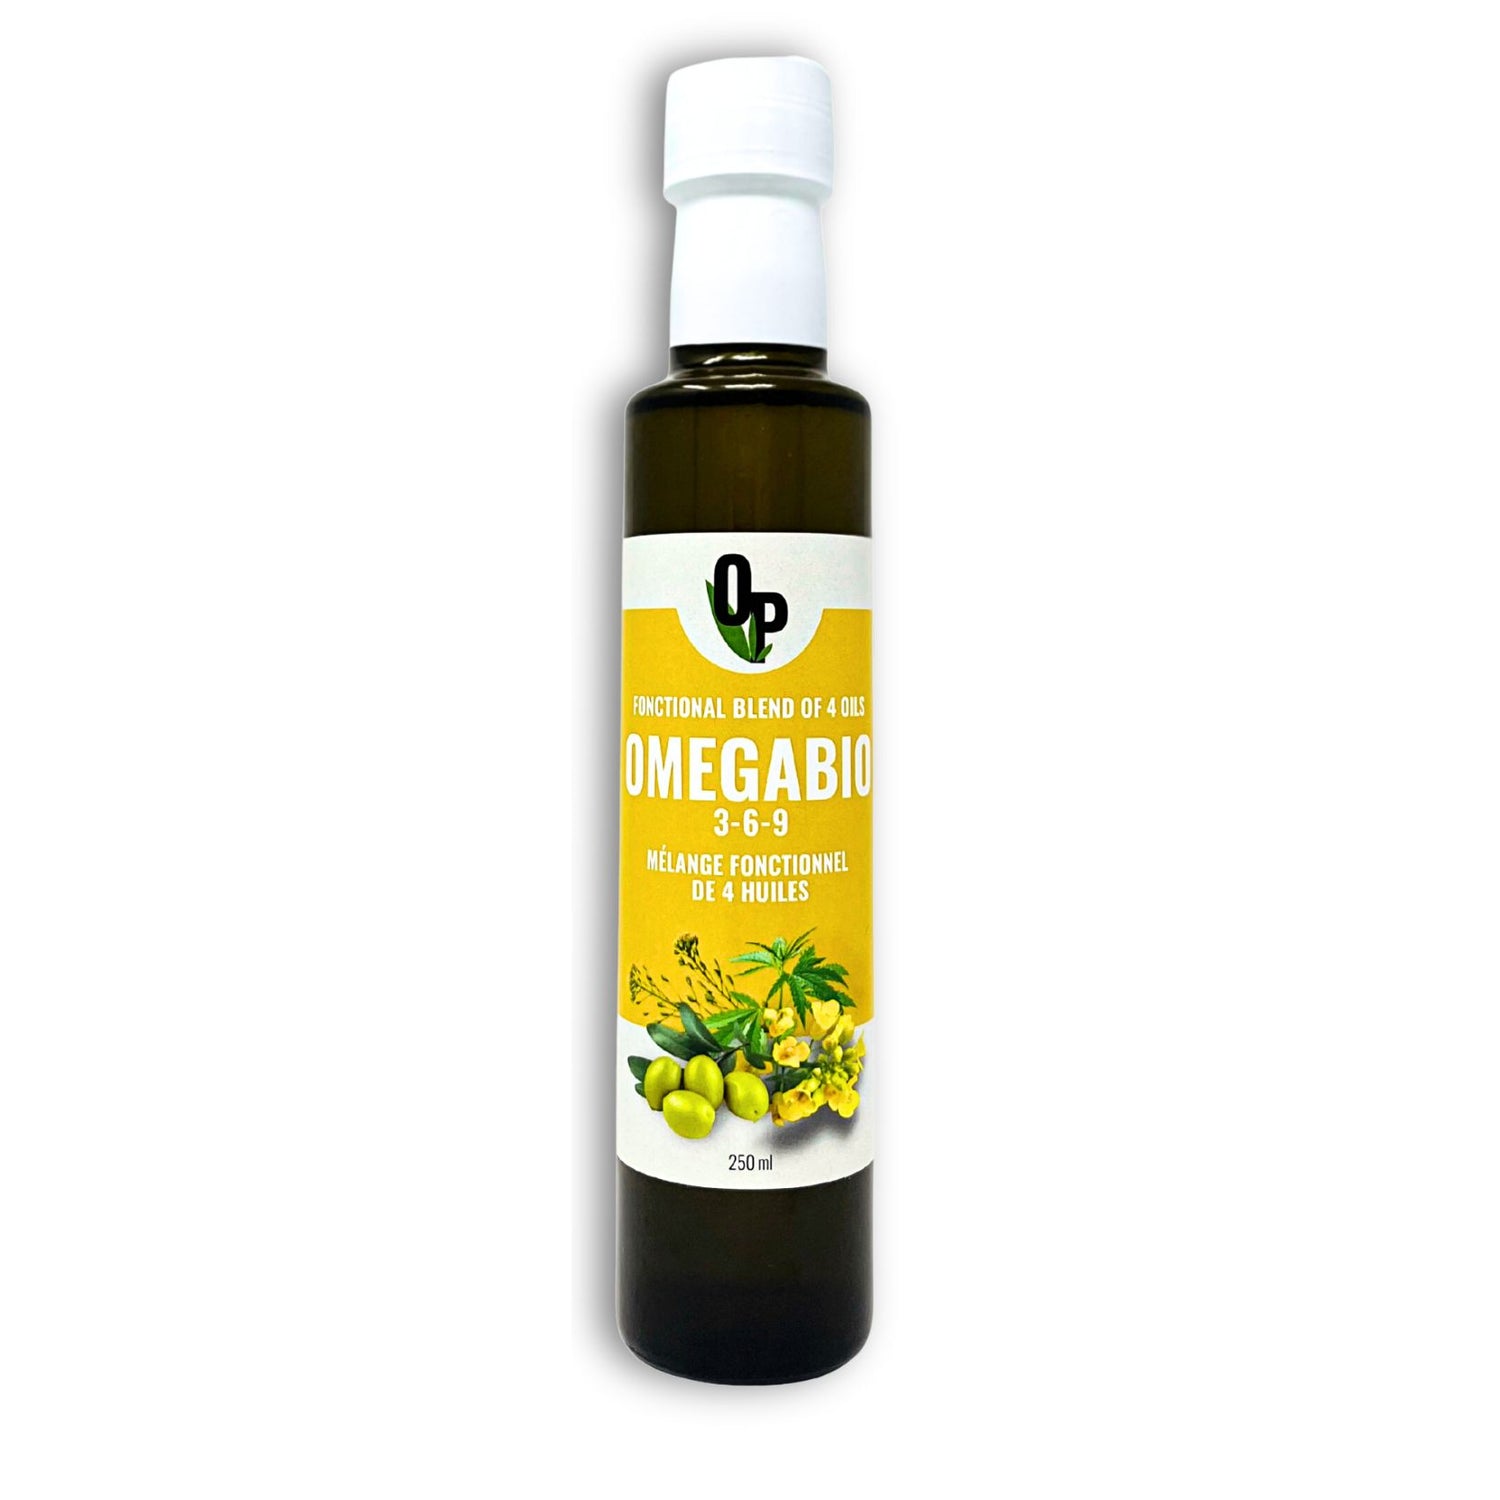 Mélange Fonctionnel de quatre huiles OmegaBio 3-6-9